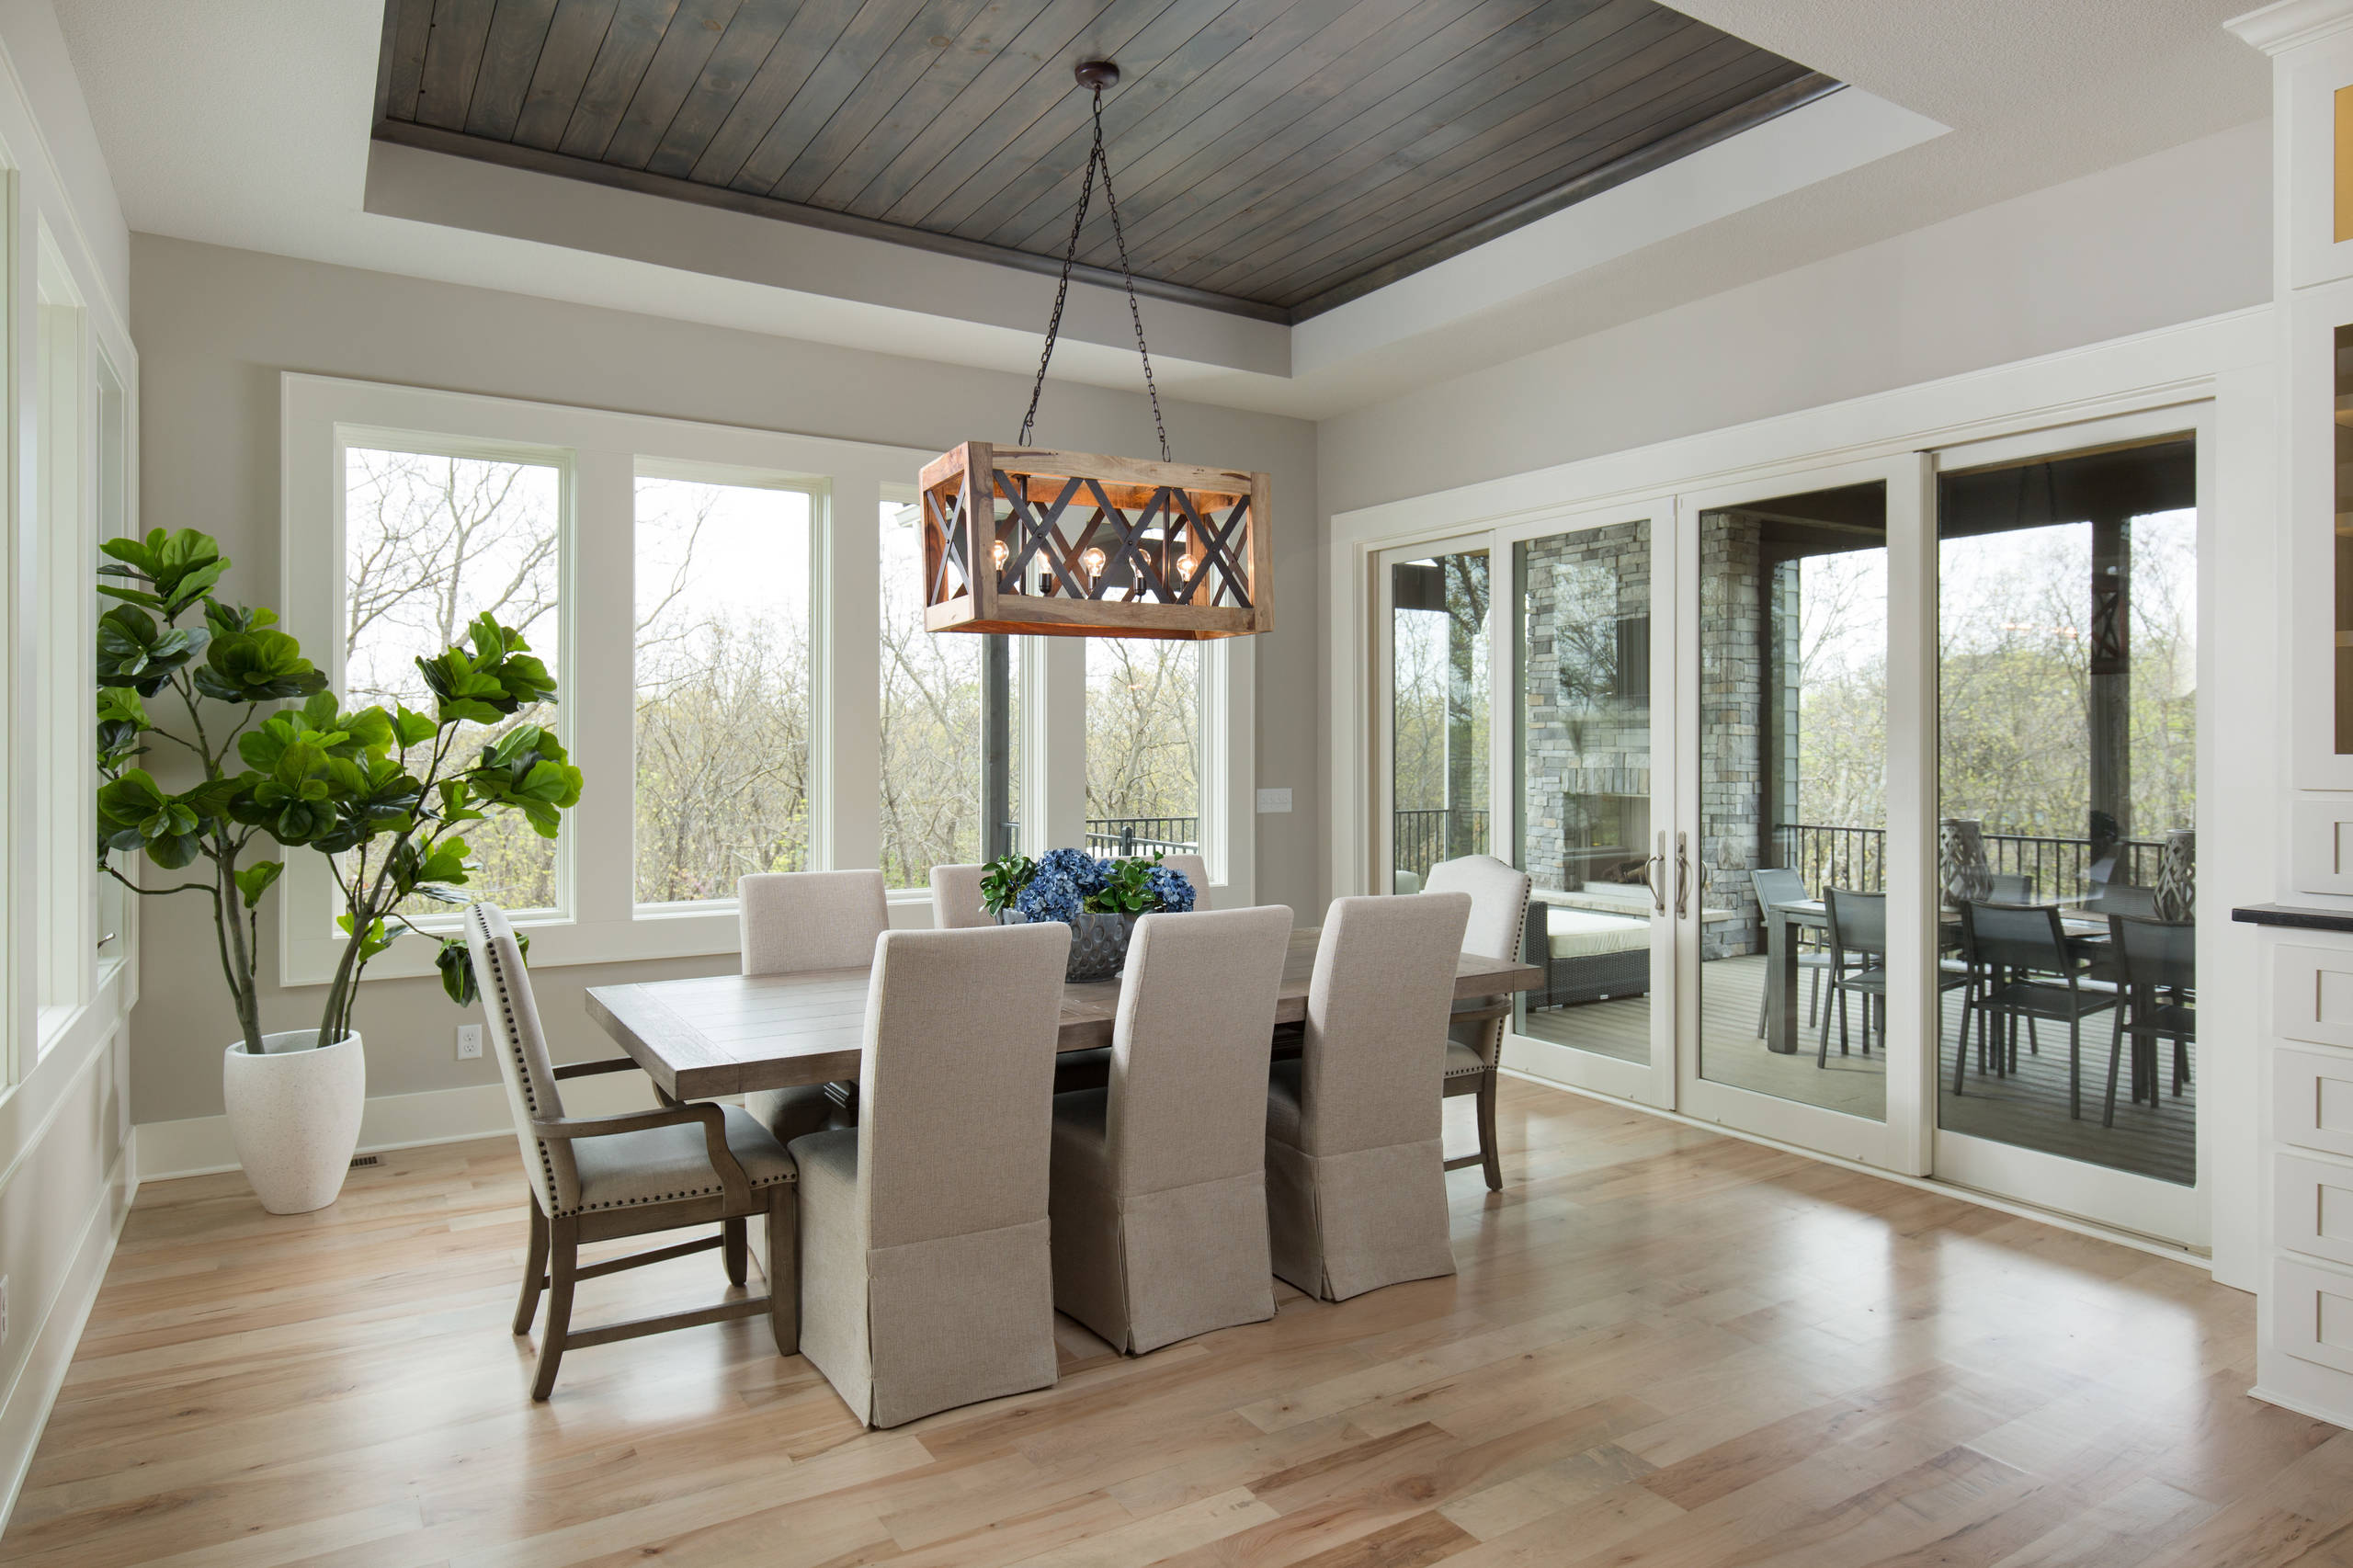 75 Light Wood Floor Dining Room Ideas